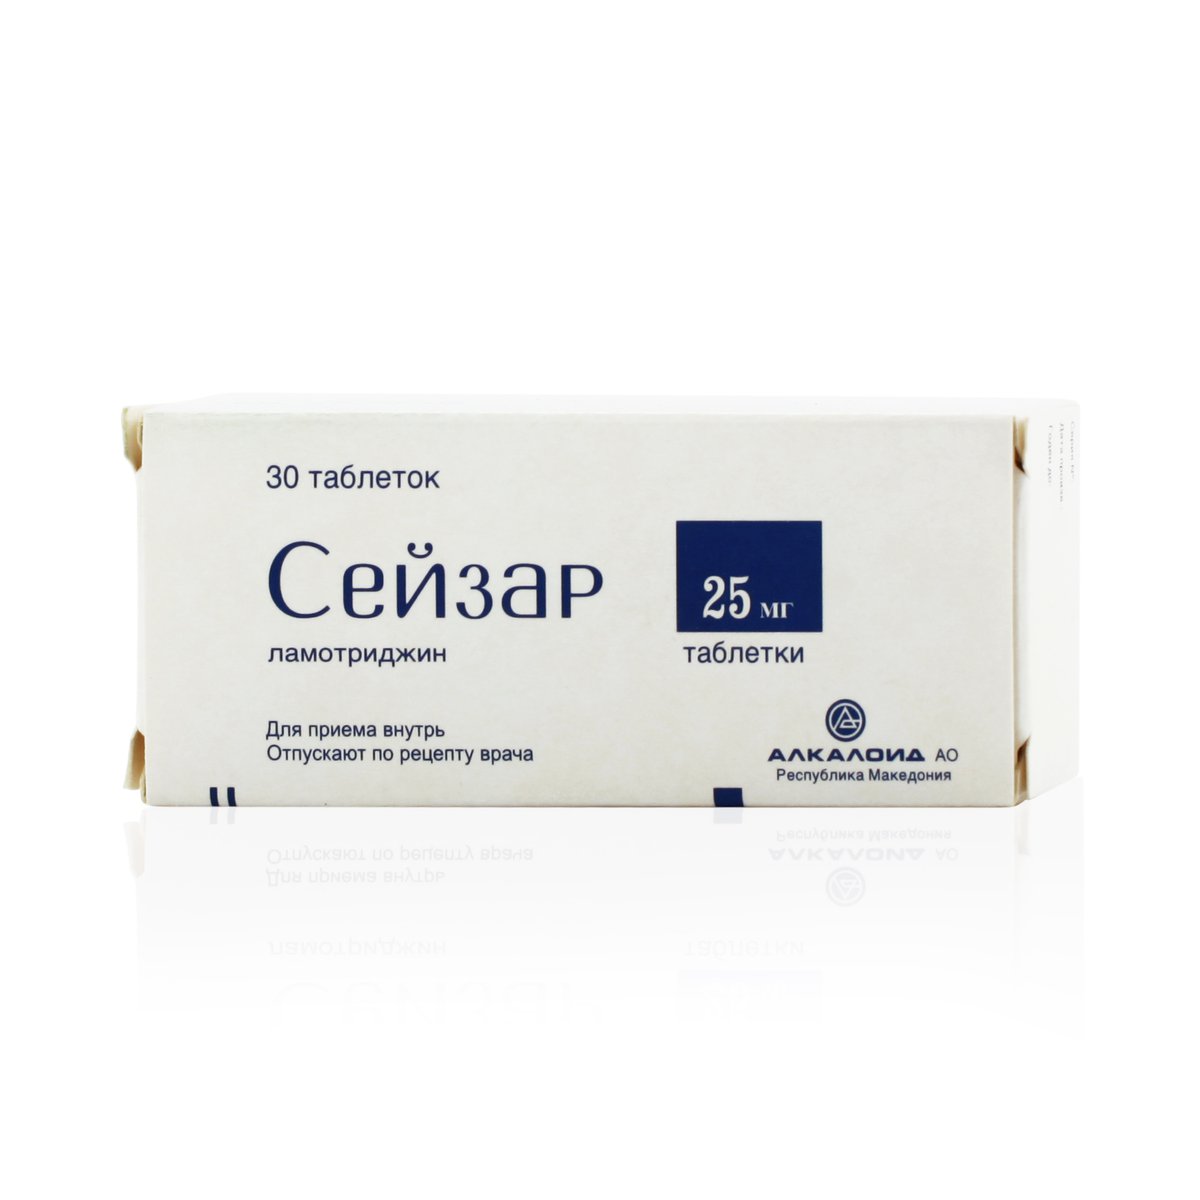 Сейзар (таблетки, 30 шт, 25 мг) - цена,  онлайн  .